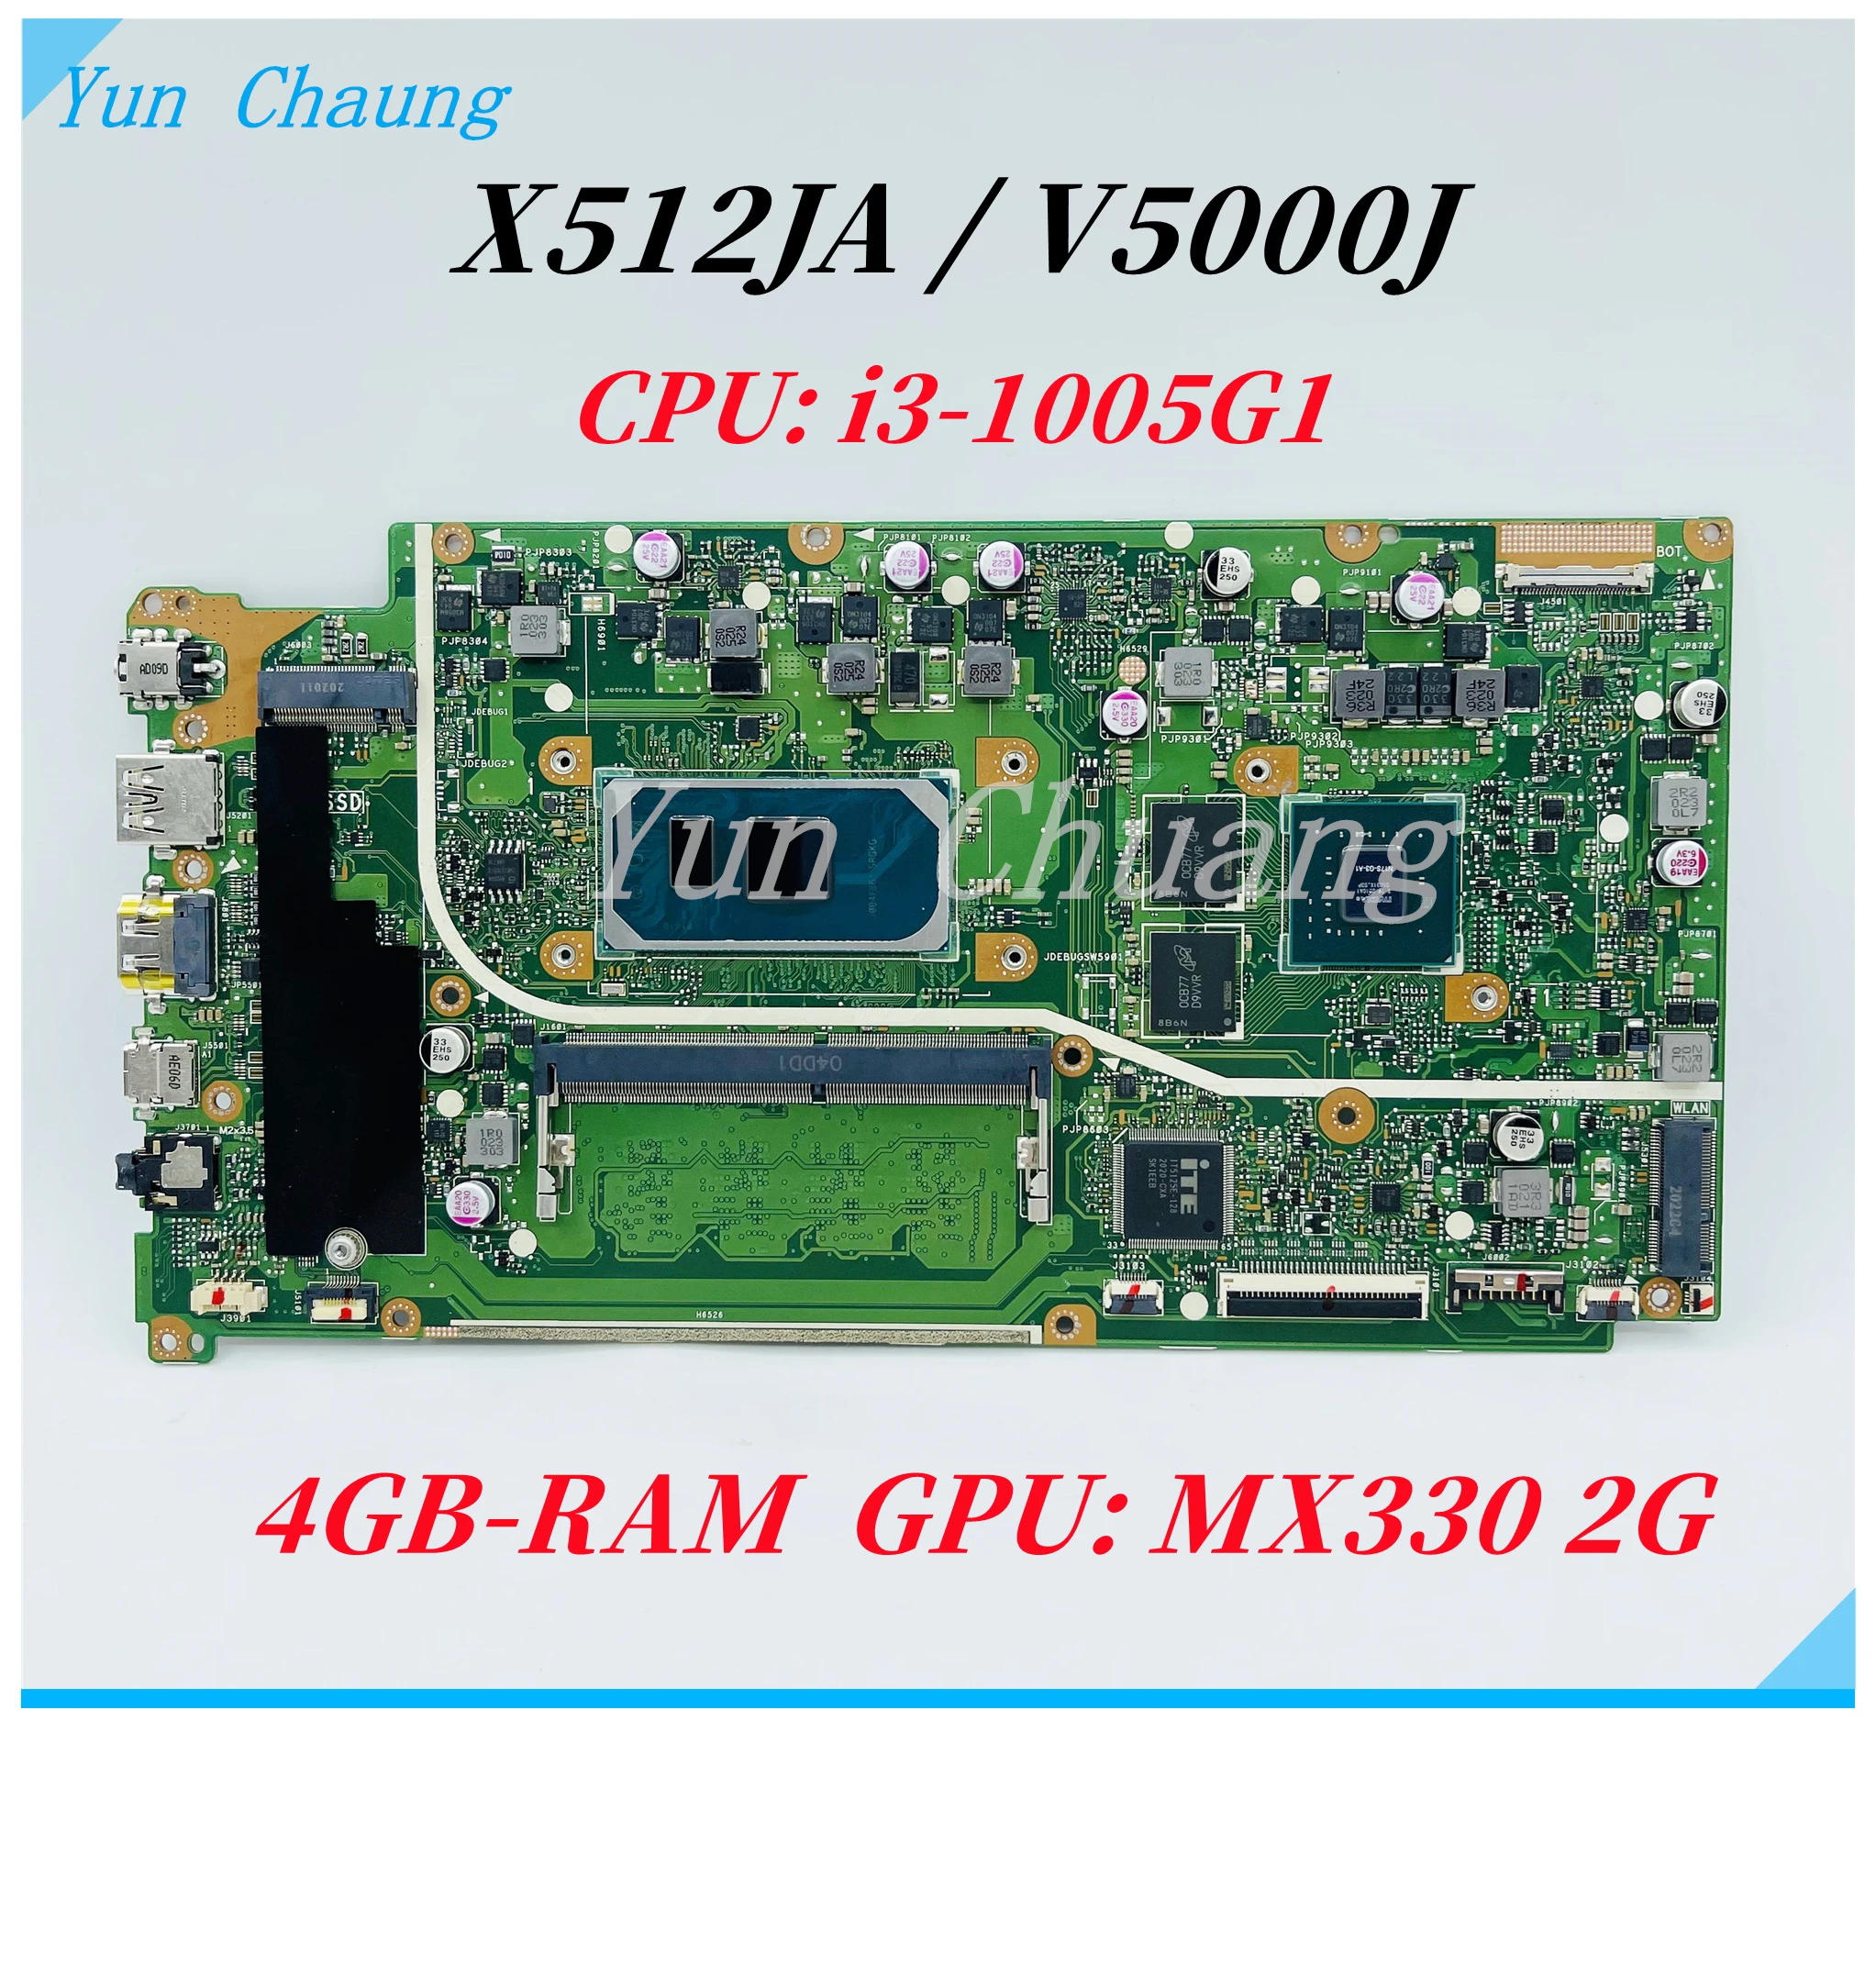 Материнская плата X512JA Для Asus VivoBook X512J X512JA V5000J X512JP V5000JP Материнская плата Ноутбука С процессором i3-1005G1 MX330 GPU 4 ГБ оперативной памяти